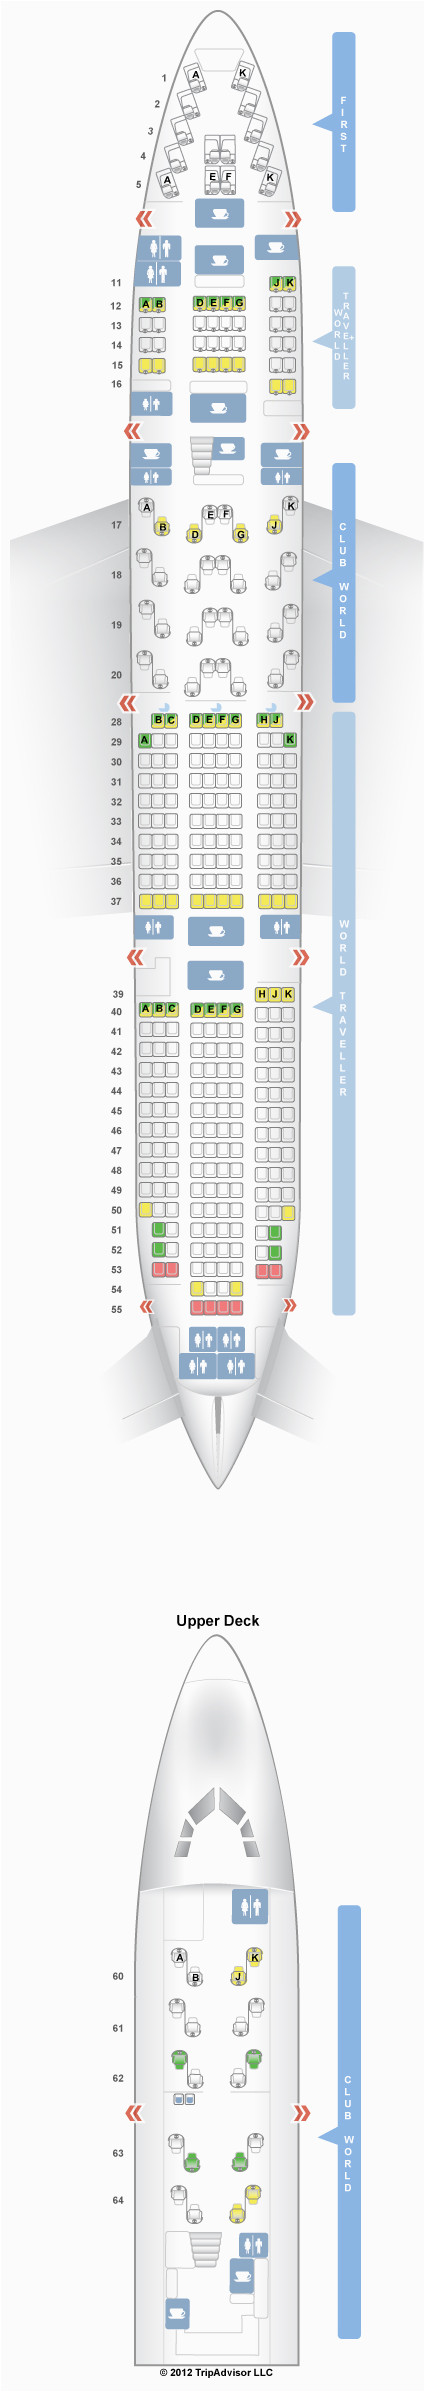 seatguru seat map british airways boeing 747 400 744 v1 travel